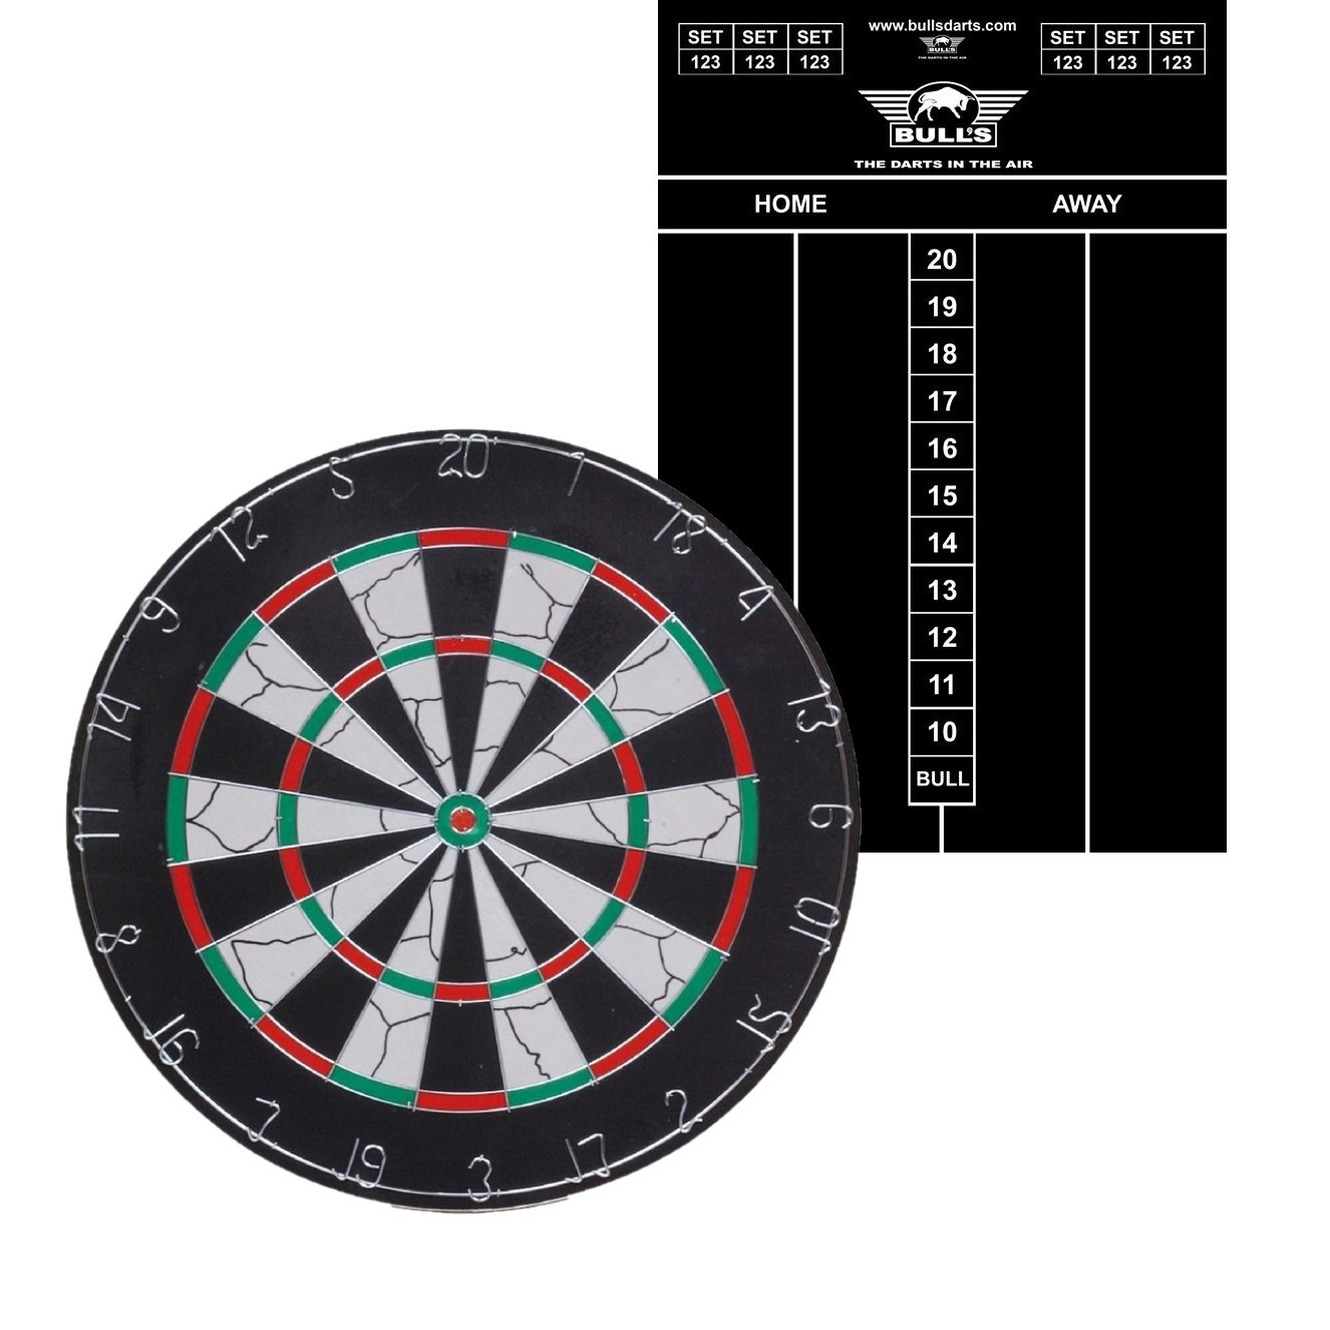 Dartbord Longfield set compleet van diameter 45 cm met 6 dartpijlen en een krijt scorebord 45 x 30 cm